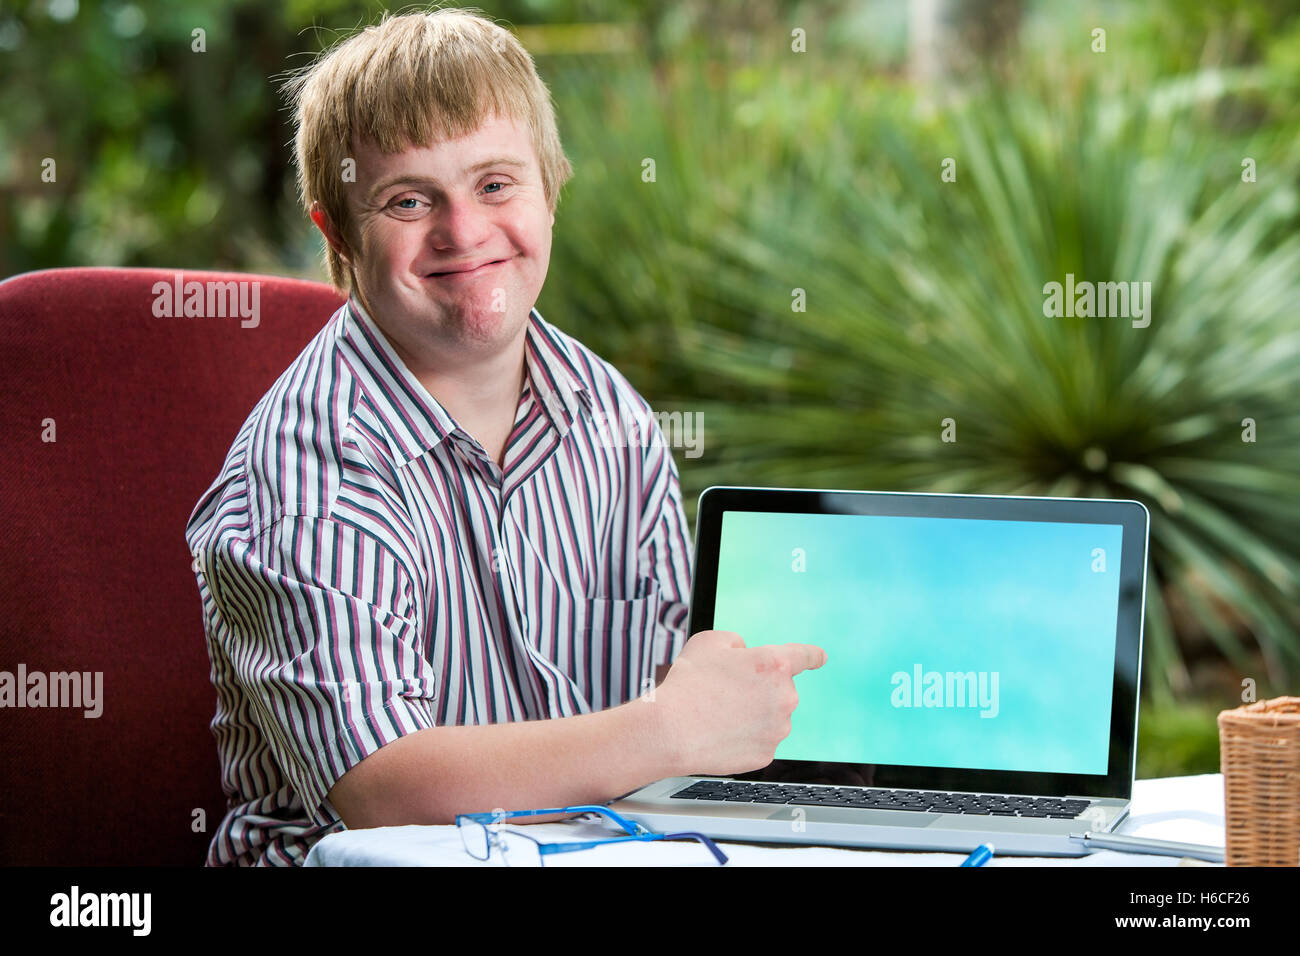 Close up ritratto di cordiale giovane studente con la sindrome di down rivolto a vuoto allo schermo del laptop.seduto alla scrivania in giardino. Foto Stock